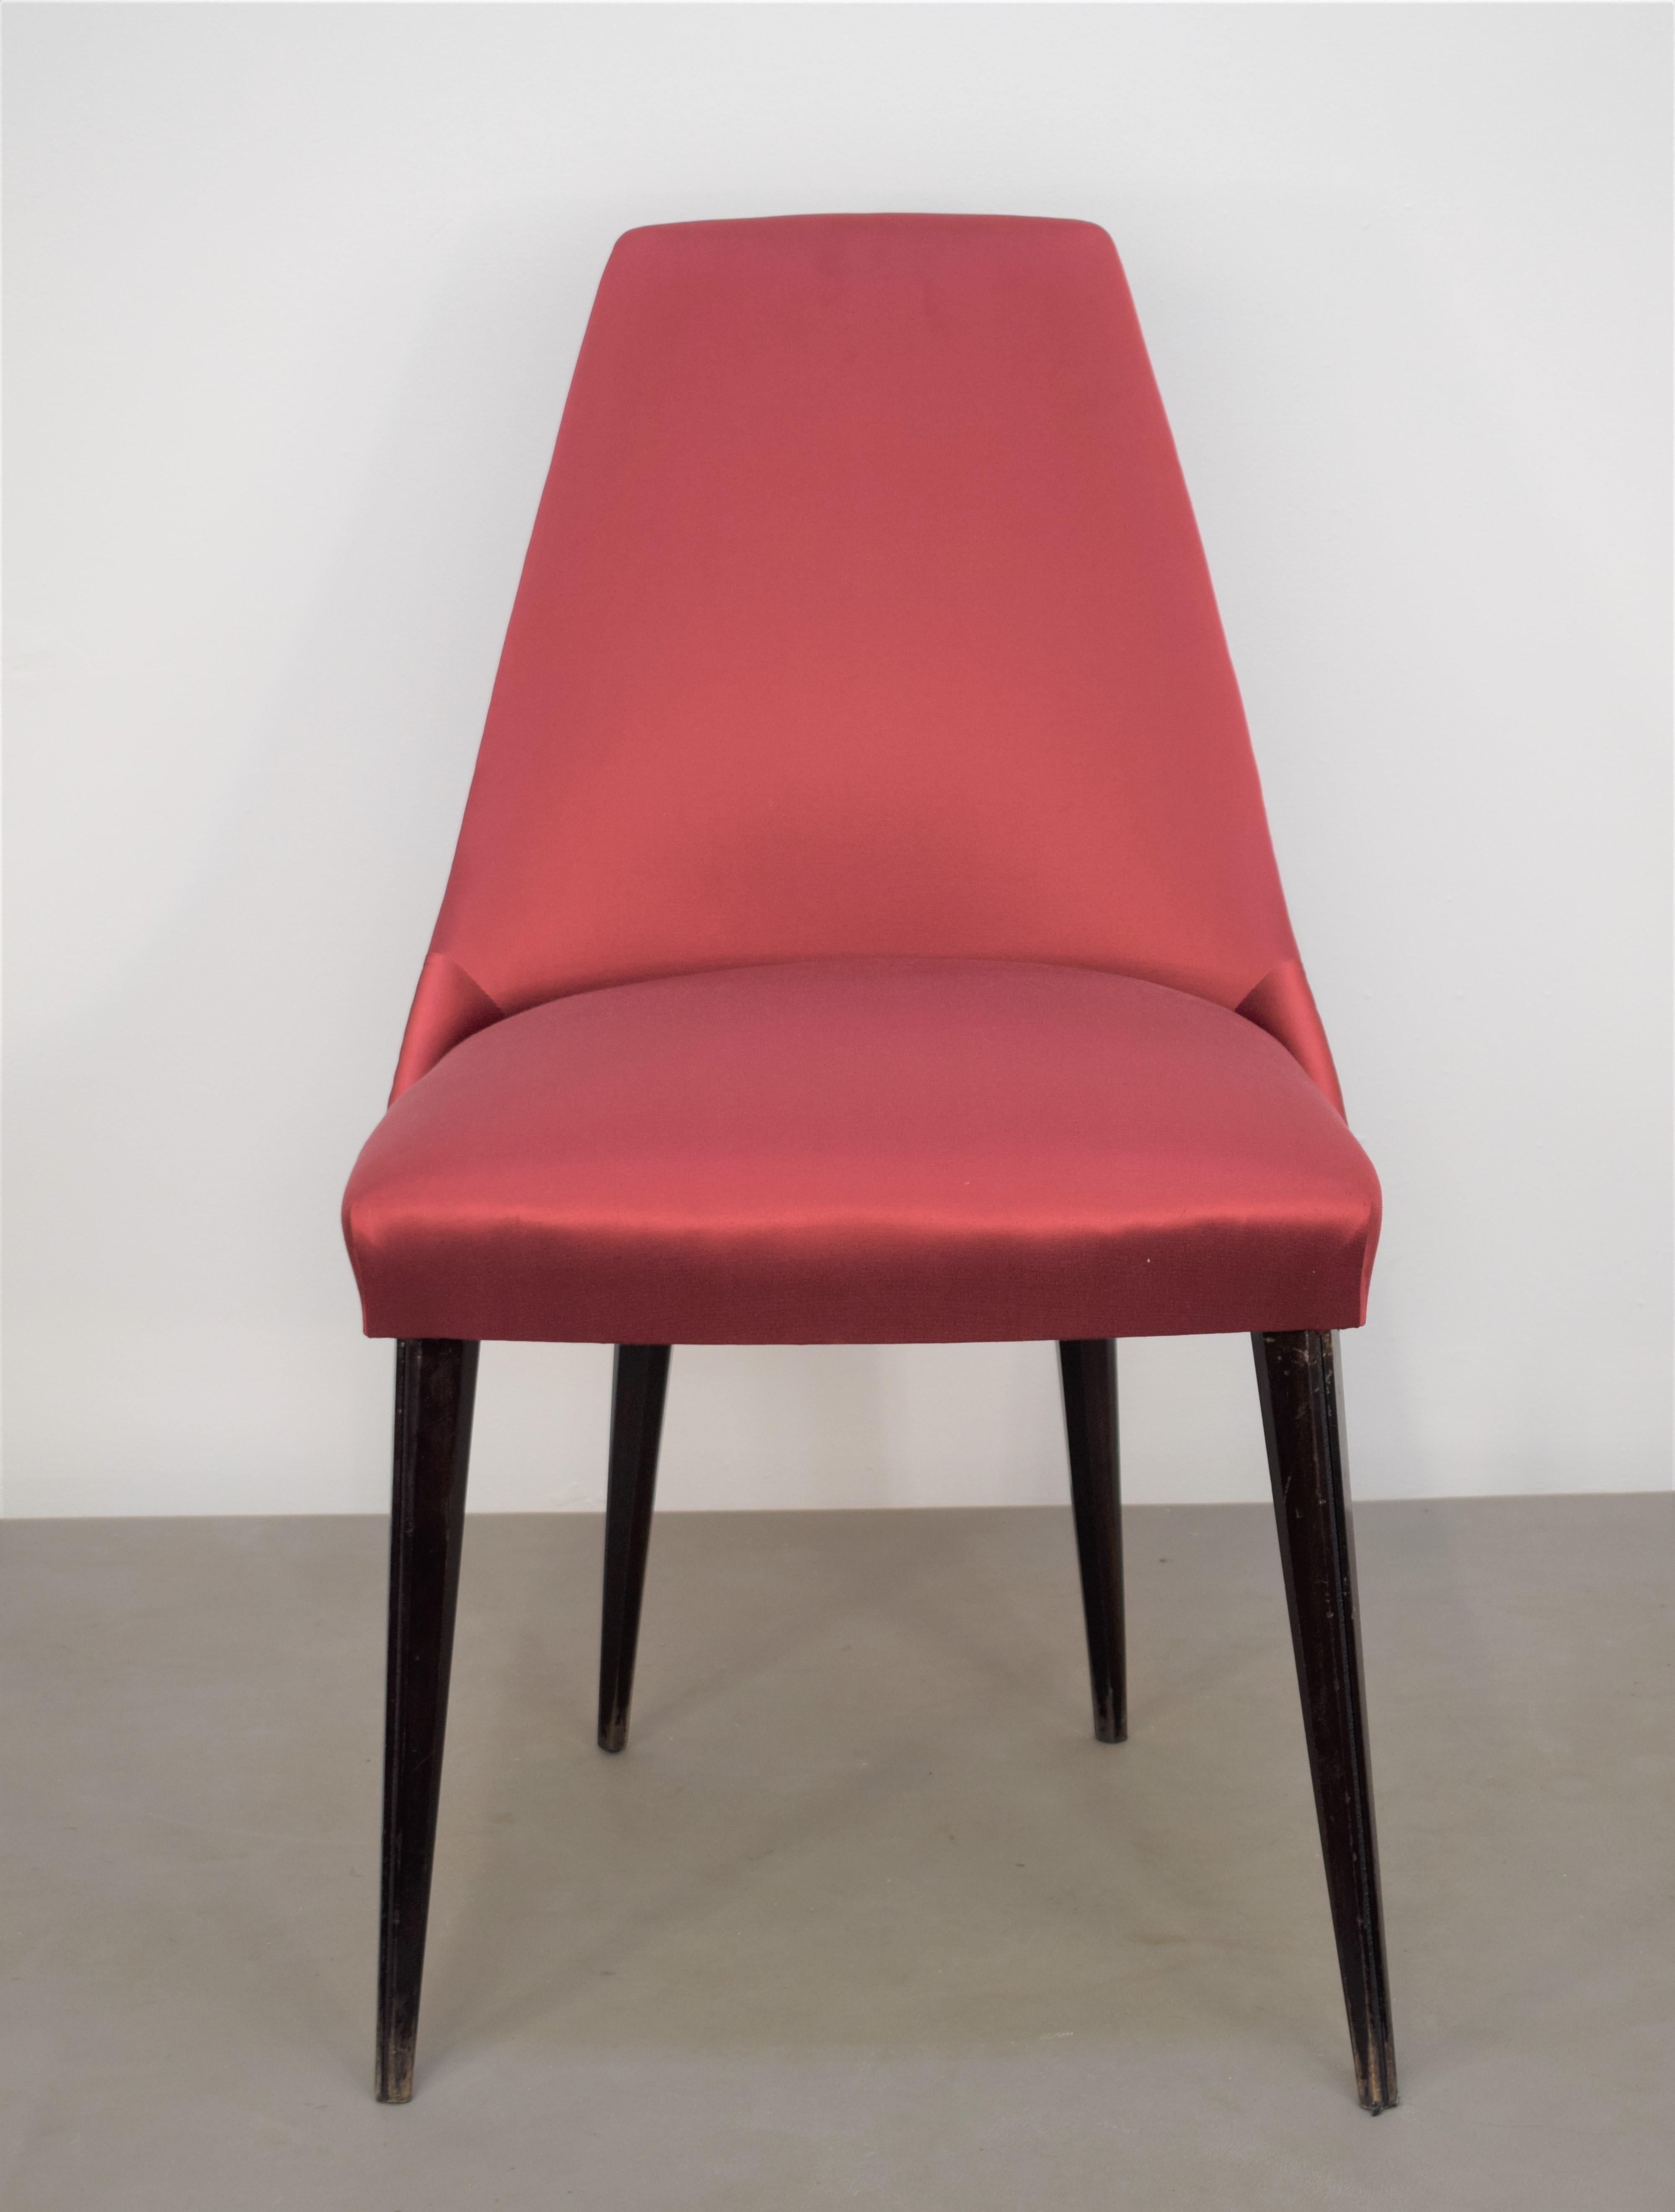 Set of 3 Italian Chairs, Osvaldo Borsani Style, 1960s For Sale 5